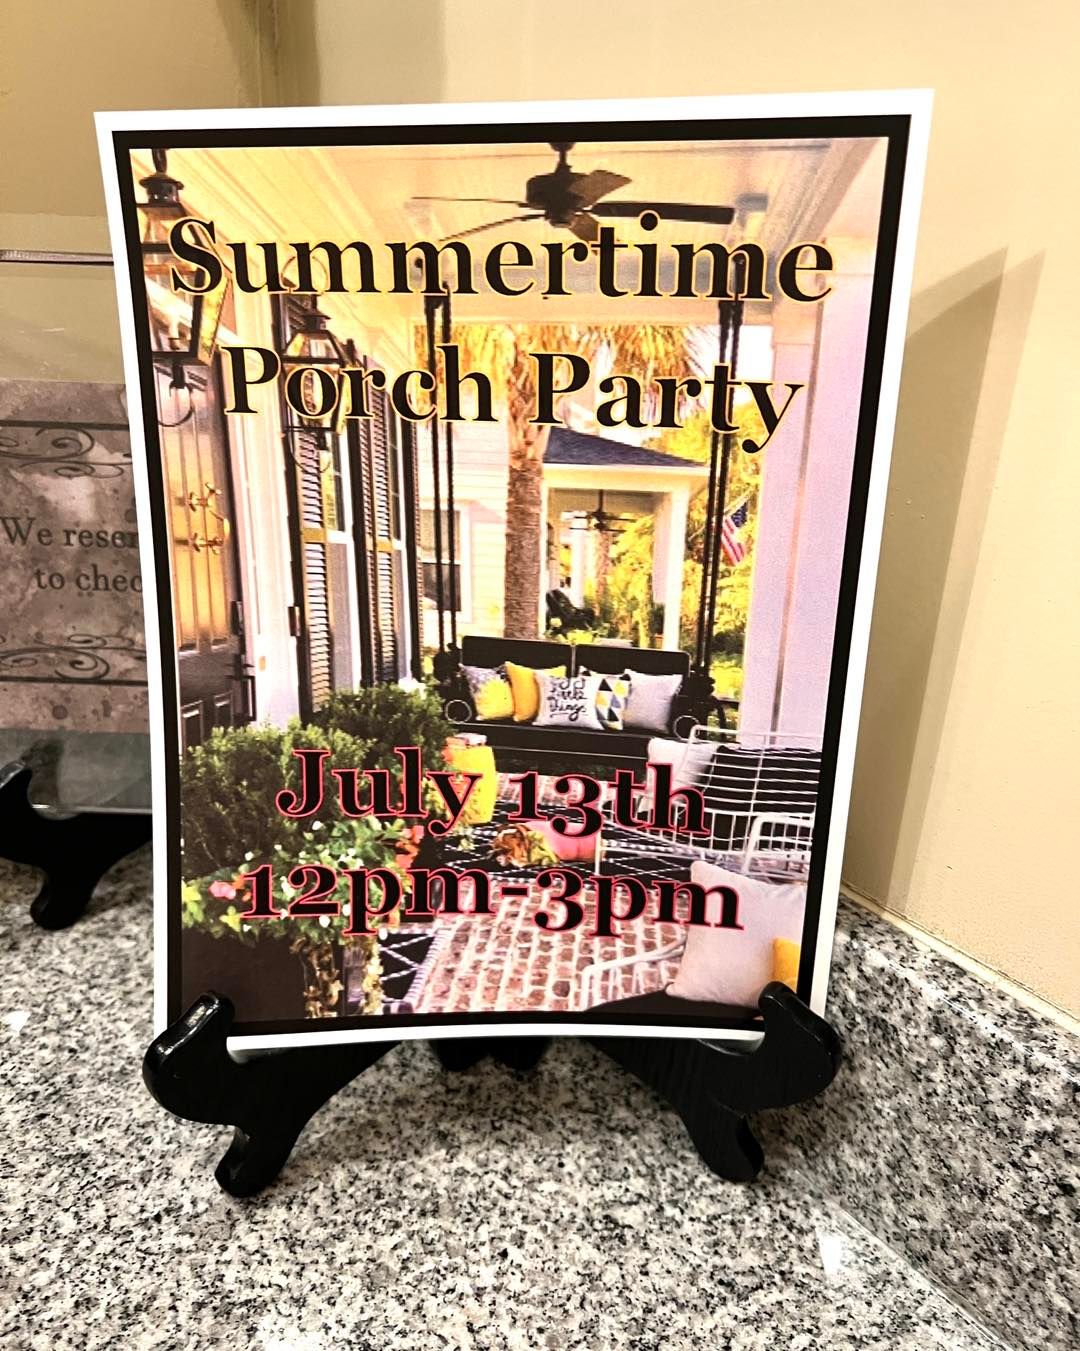 Frisco Mercantile's Summertime Porch Party